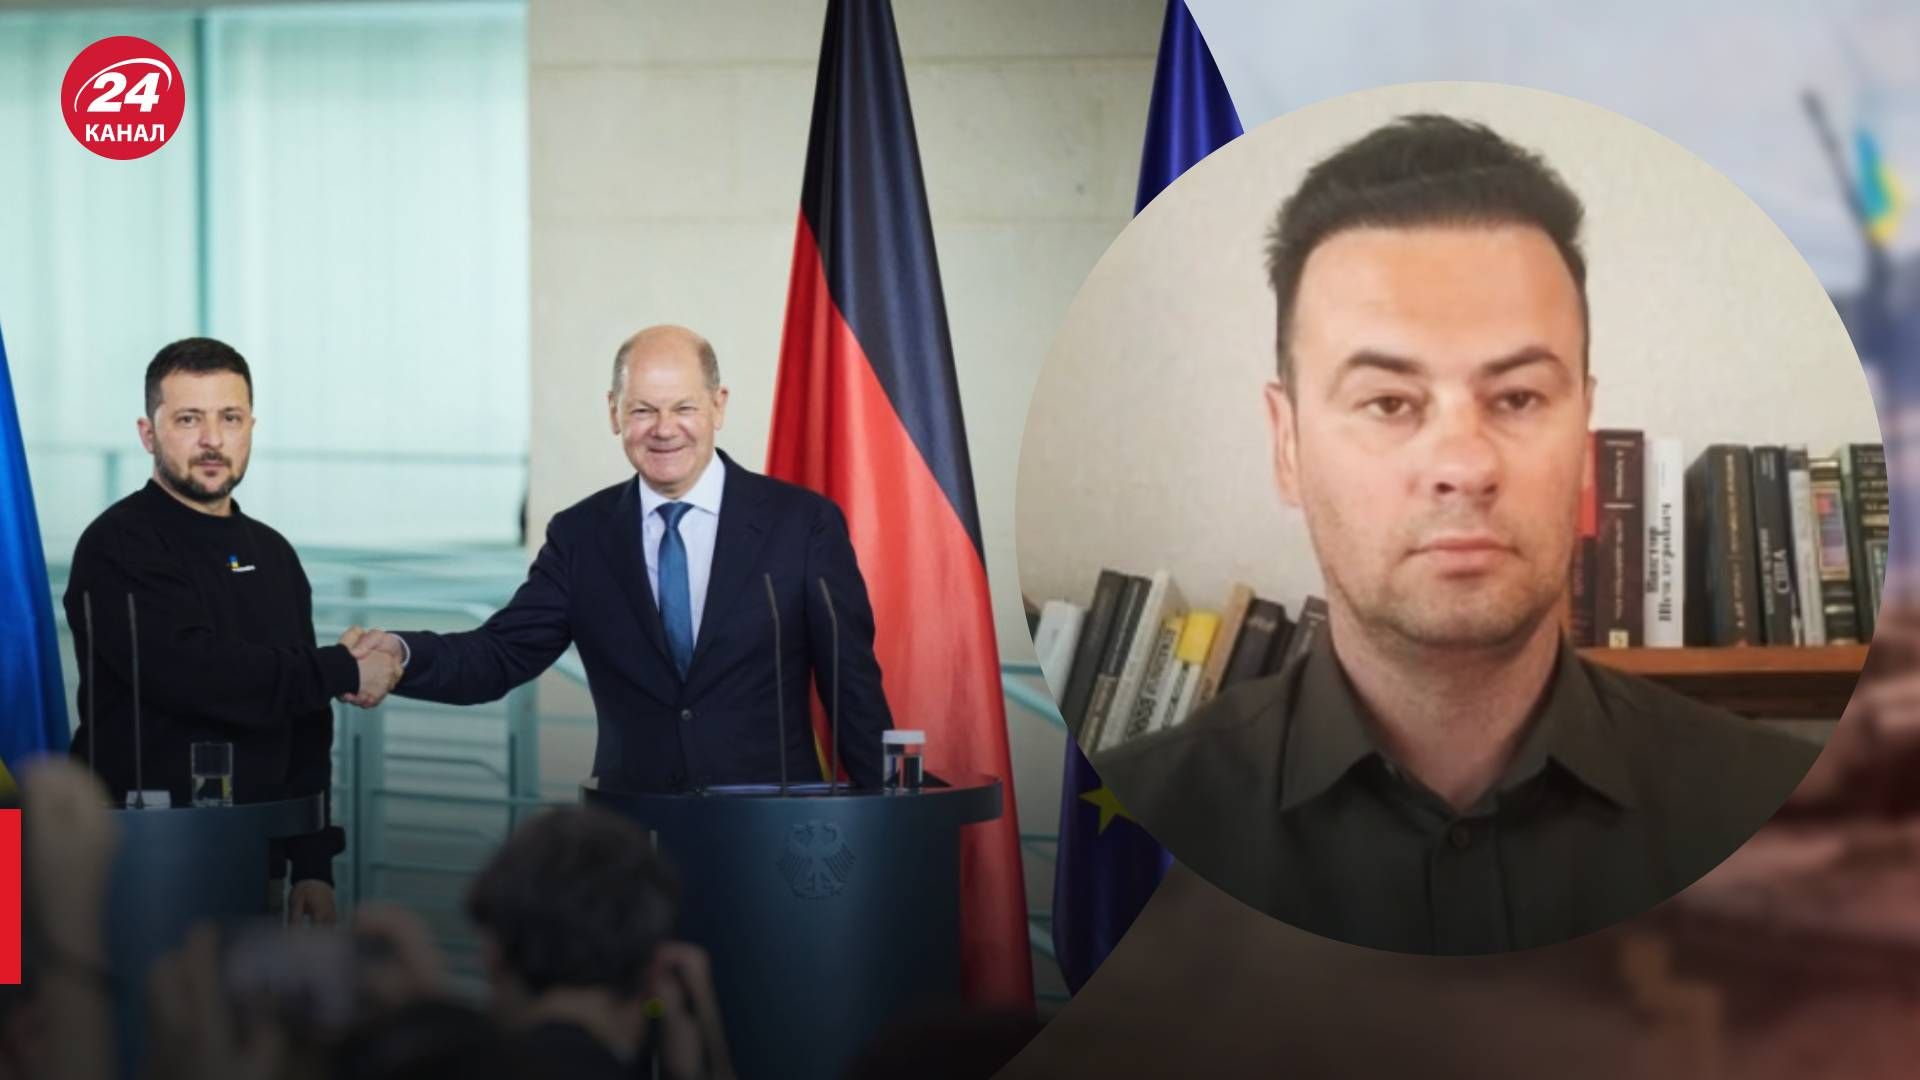 Шольц сказал Слава Украине - что означают эти слова - визит Зеленского в Европу - 24 канал